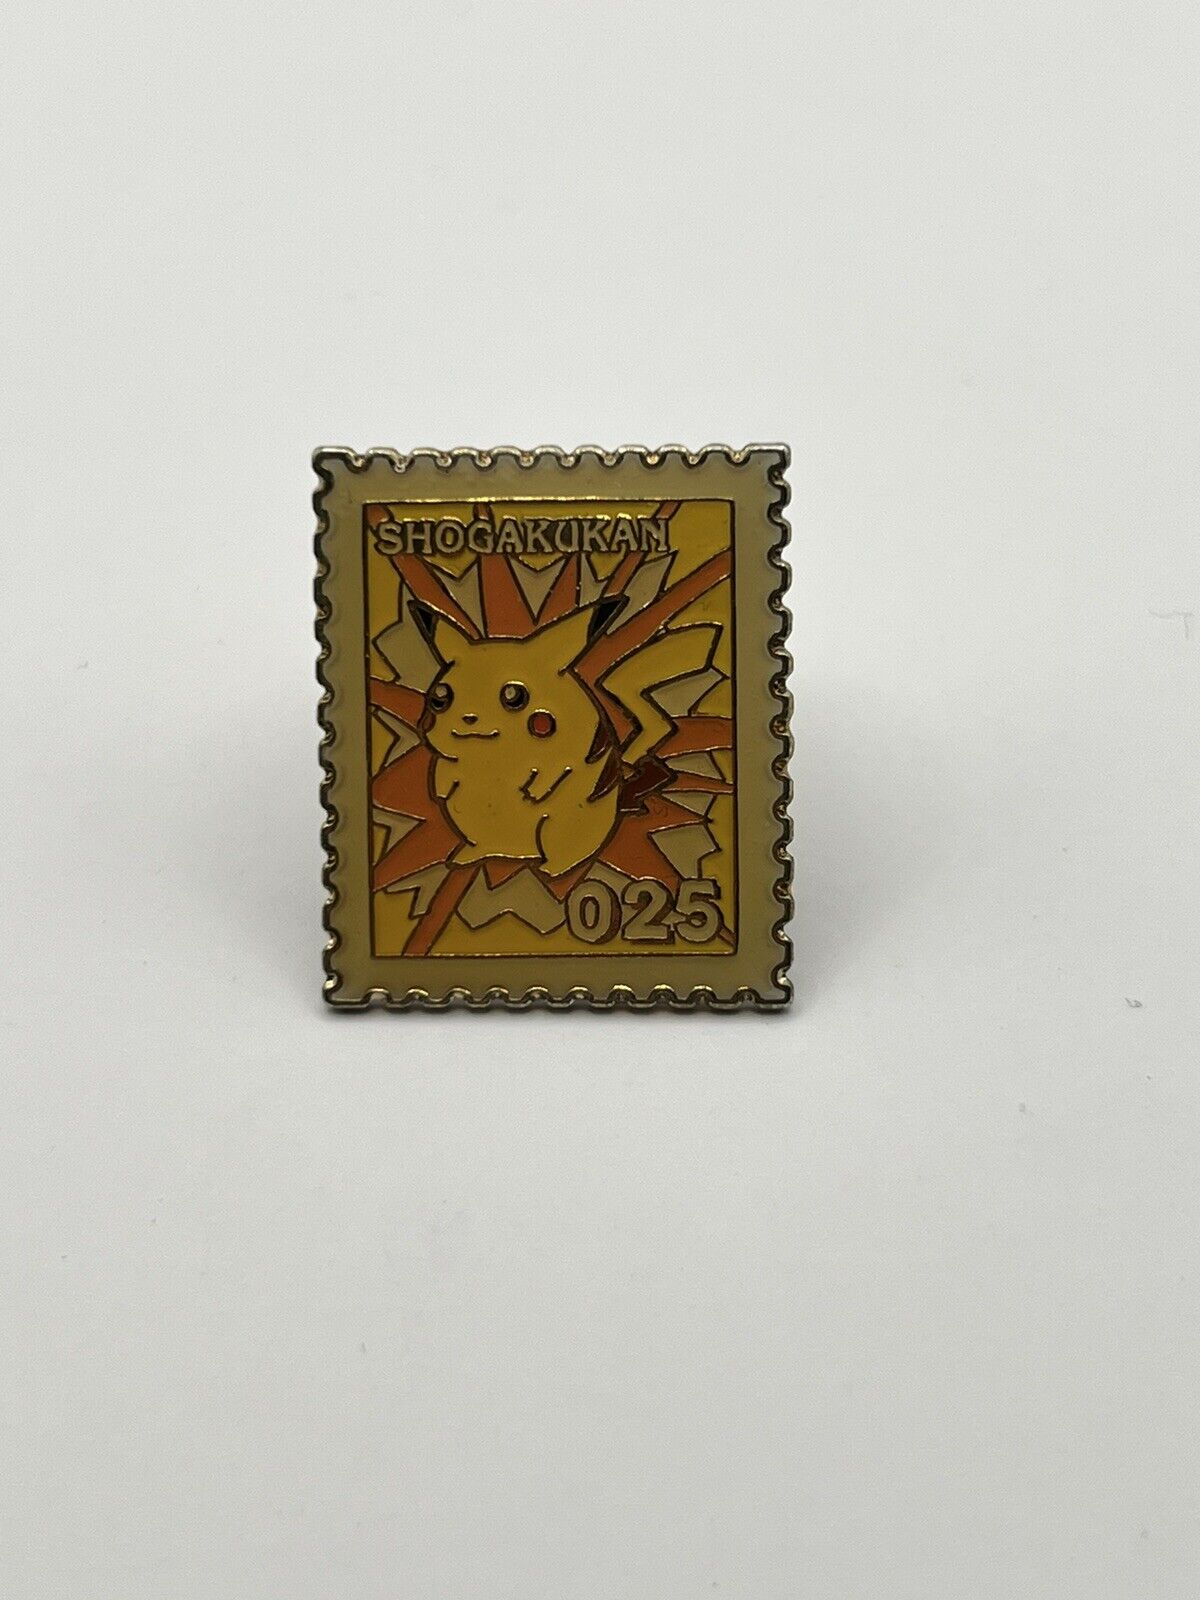 1998 Pokemon Shogakukan Stamp Pin Badge No.025 Pikachu Rare